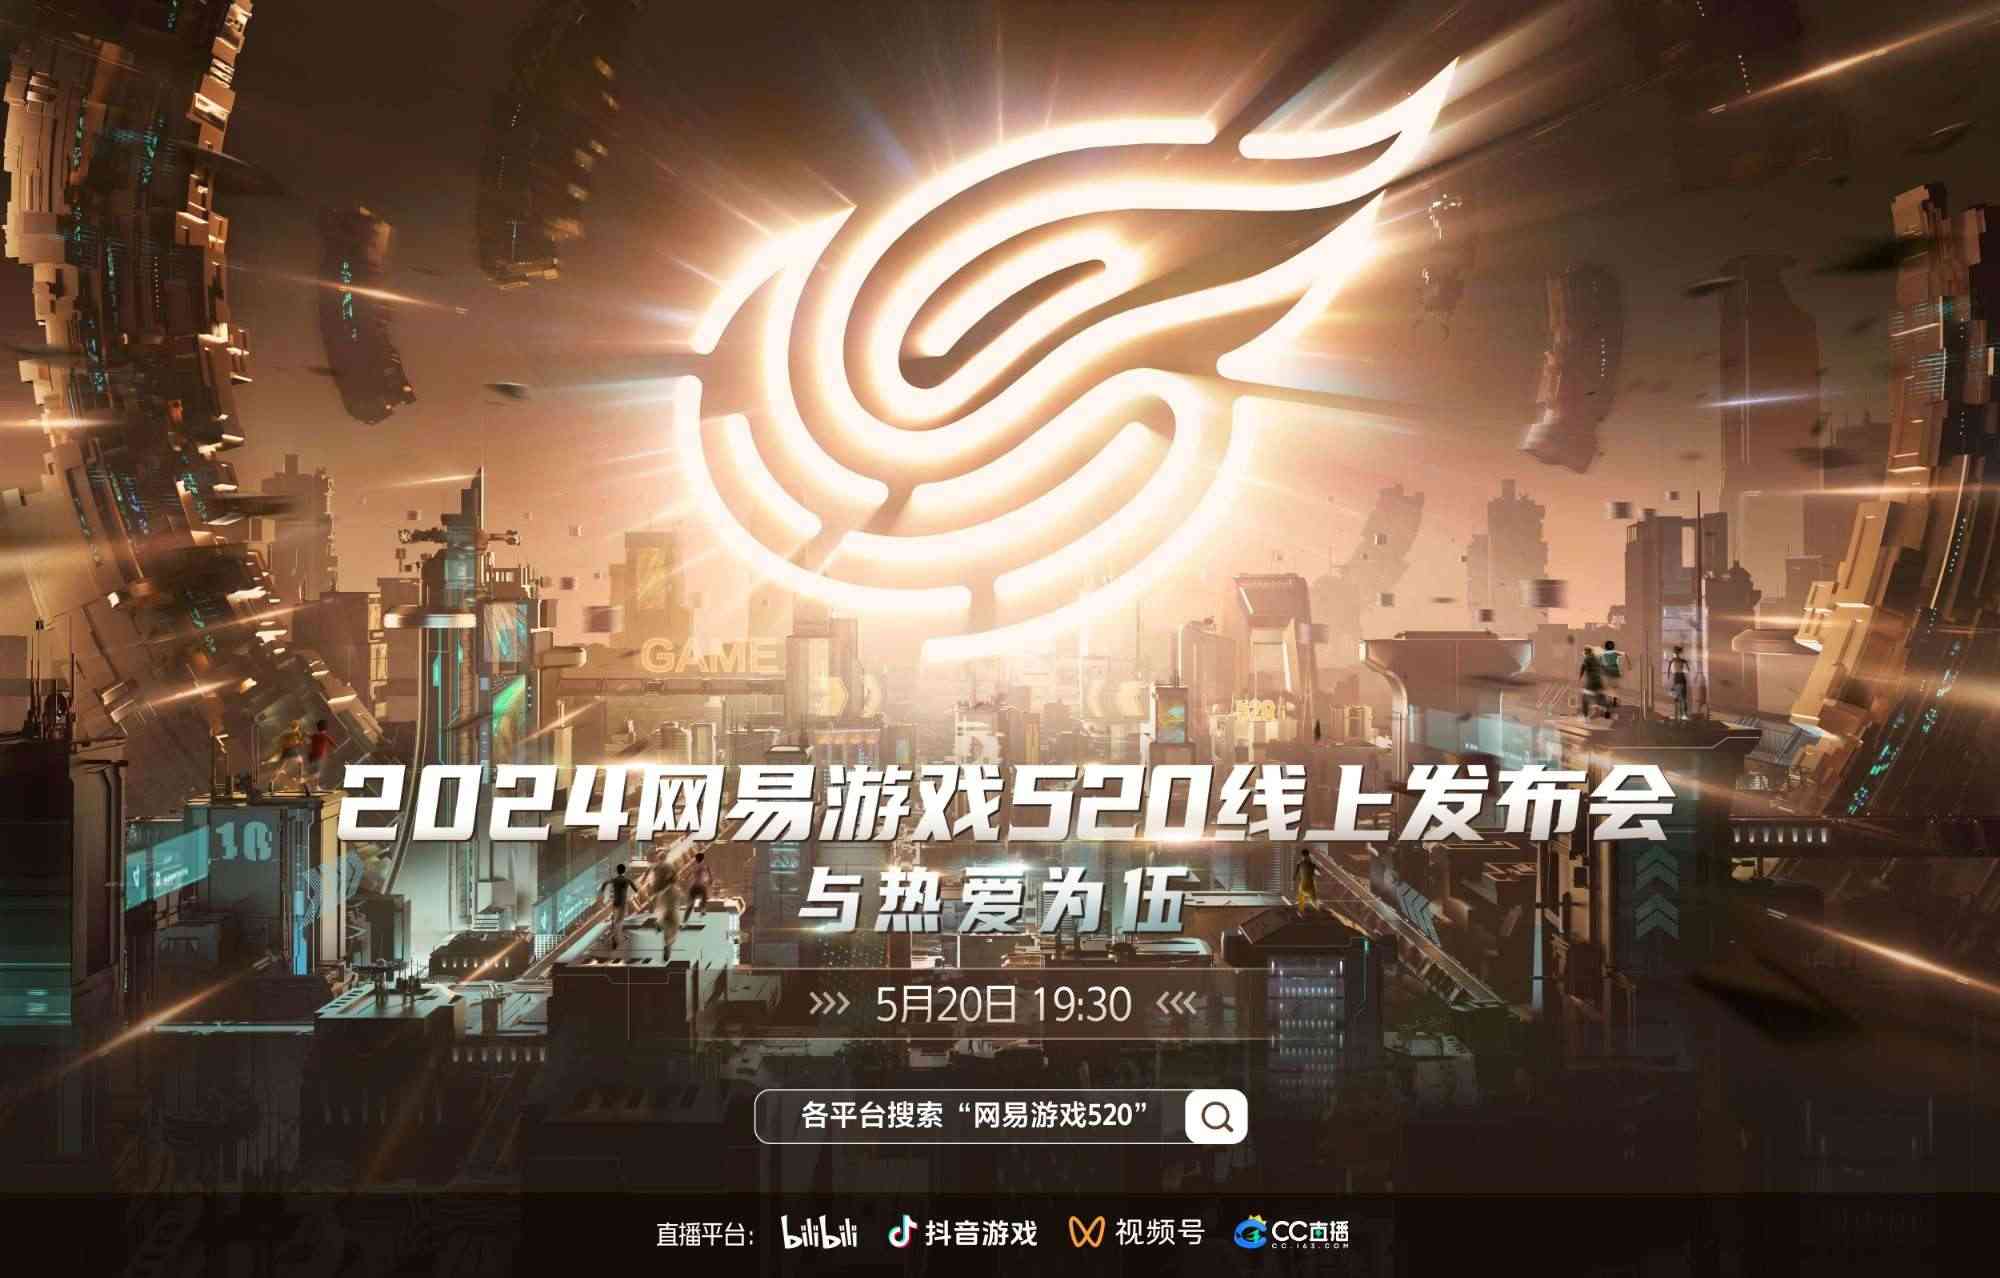 NetEase Games mang đến hội nghị 520 năm 2024 bao nhiêu game?